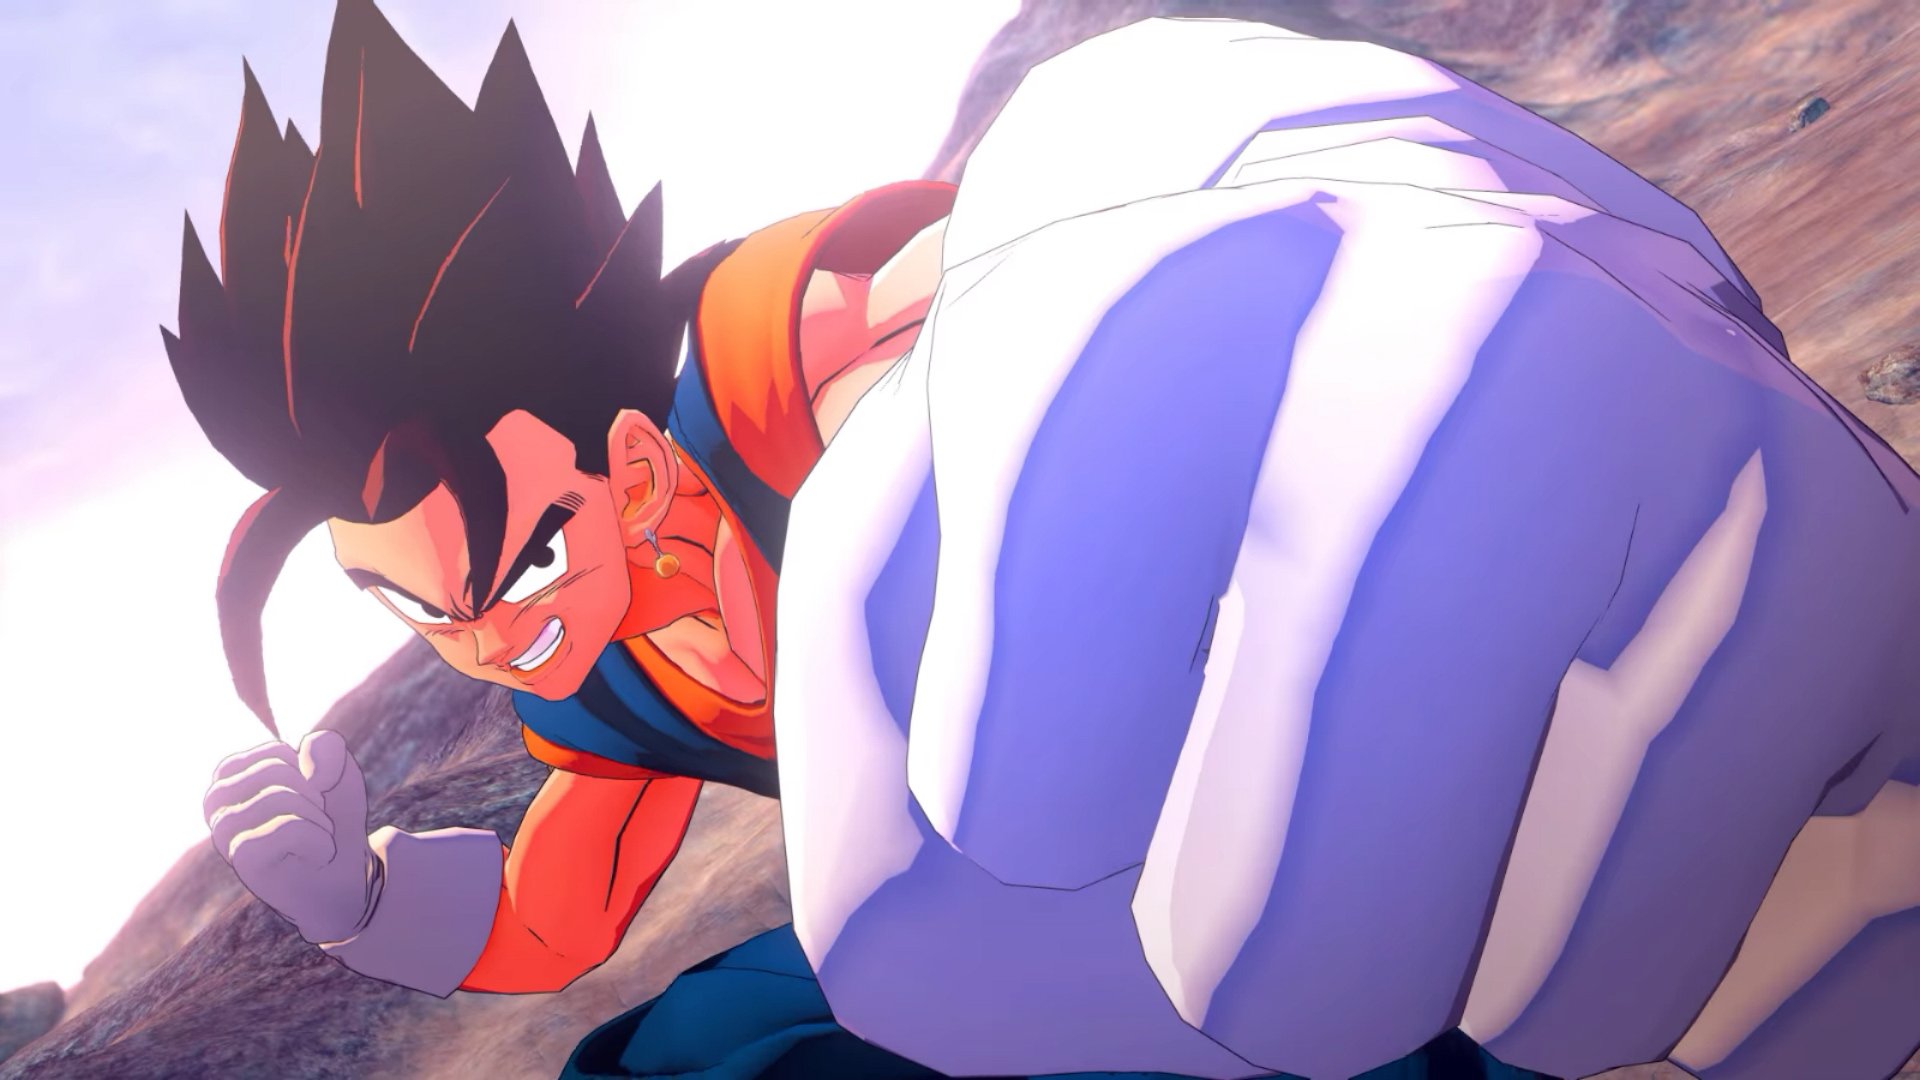 Imagens mostram Vegito em ação em Dragon Ball Z Kakarot